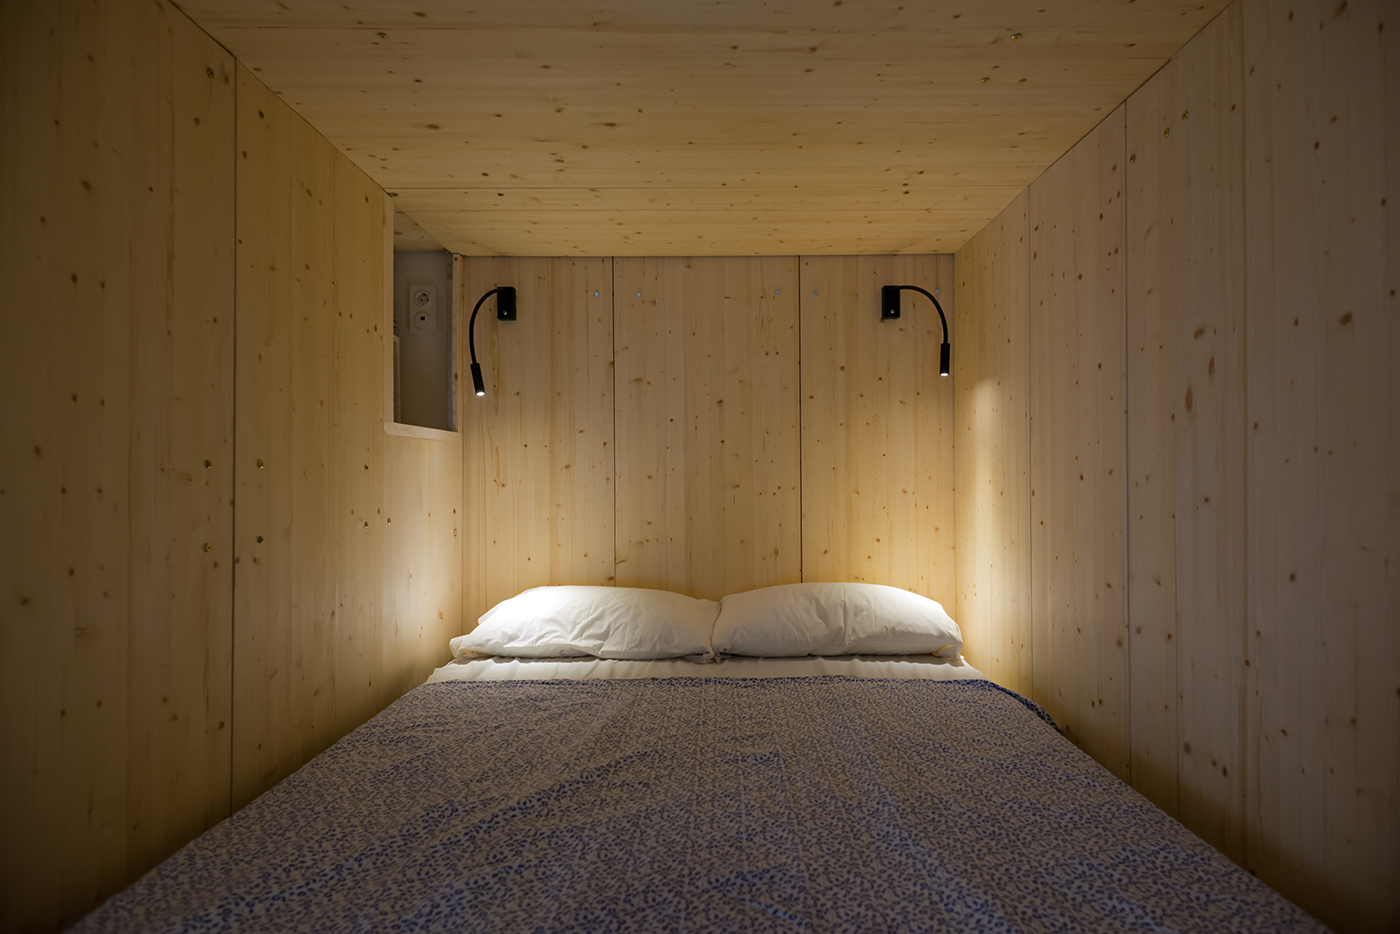 Interior Architecture architecture small flat transformer loft bed wooden sleepbox 35 square meter stair storage wood working  interior design 